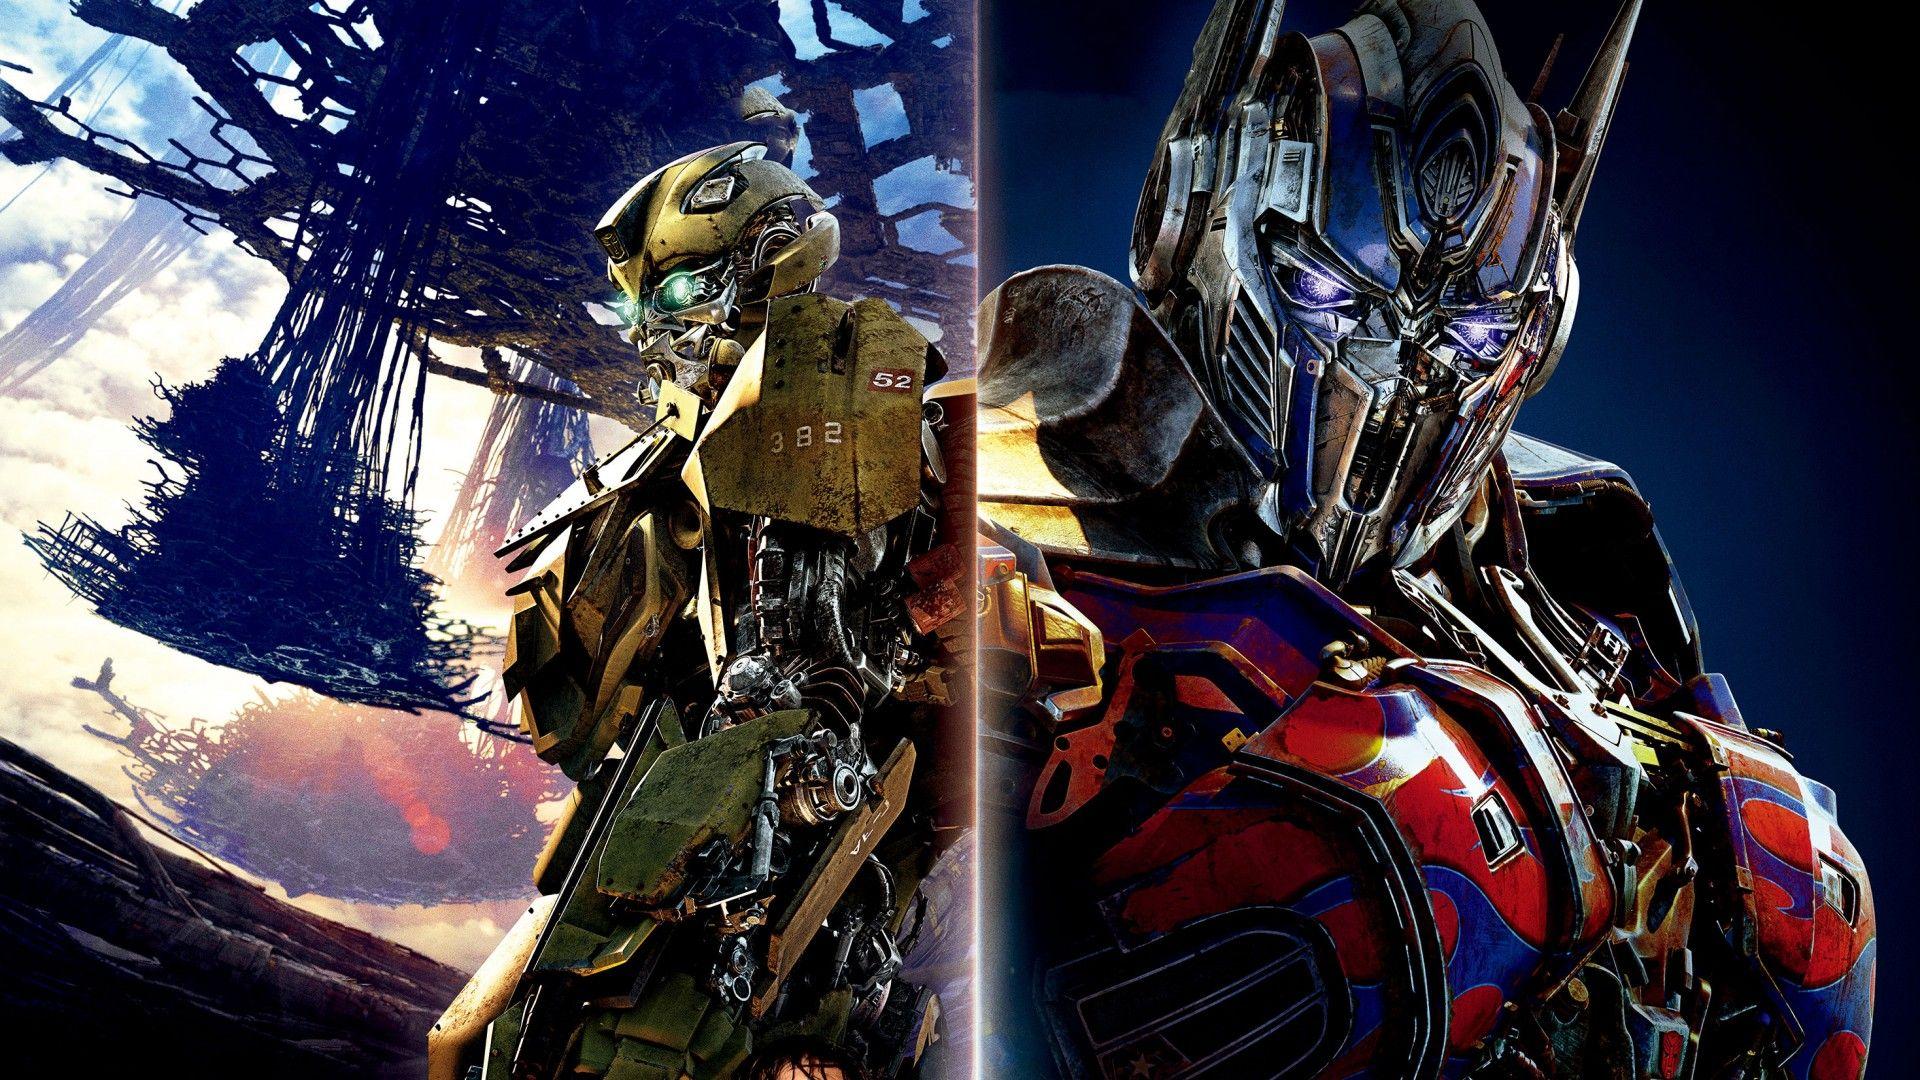 Bumblebee vs Optimus Prime Wallpaper